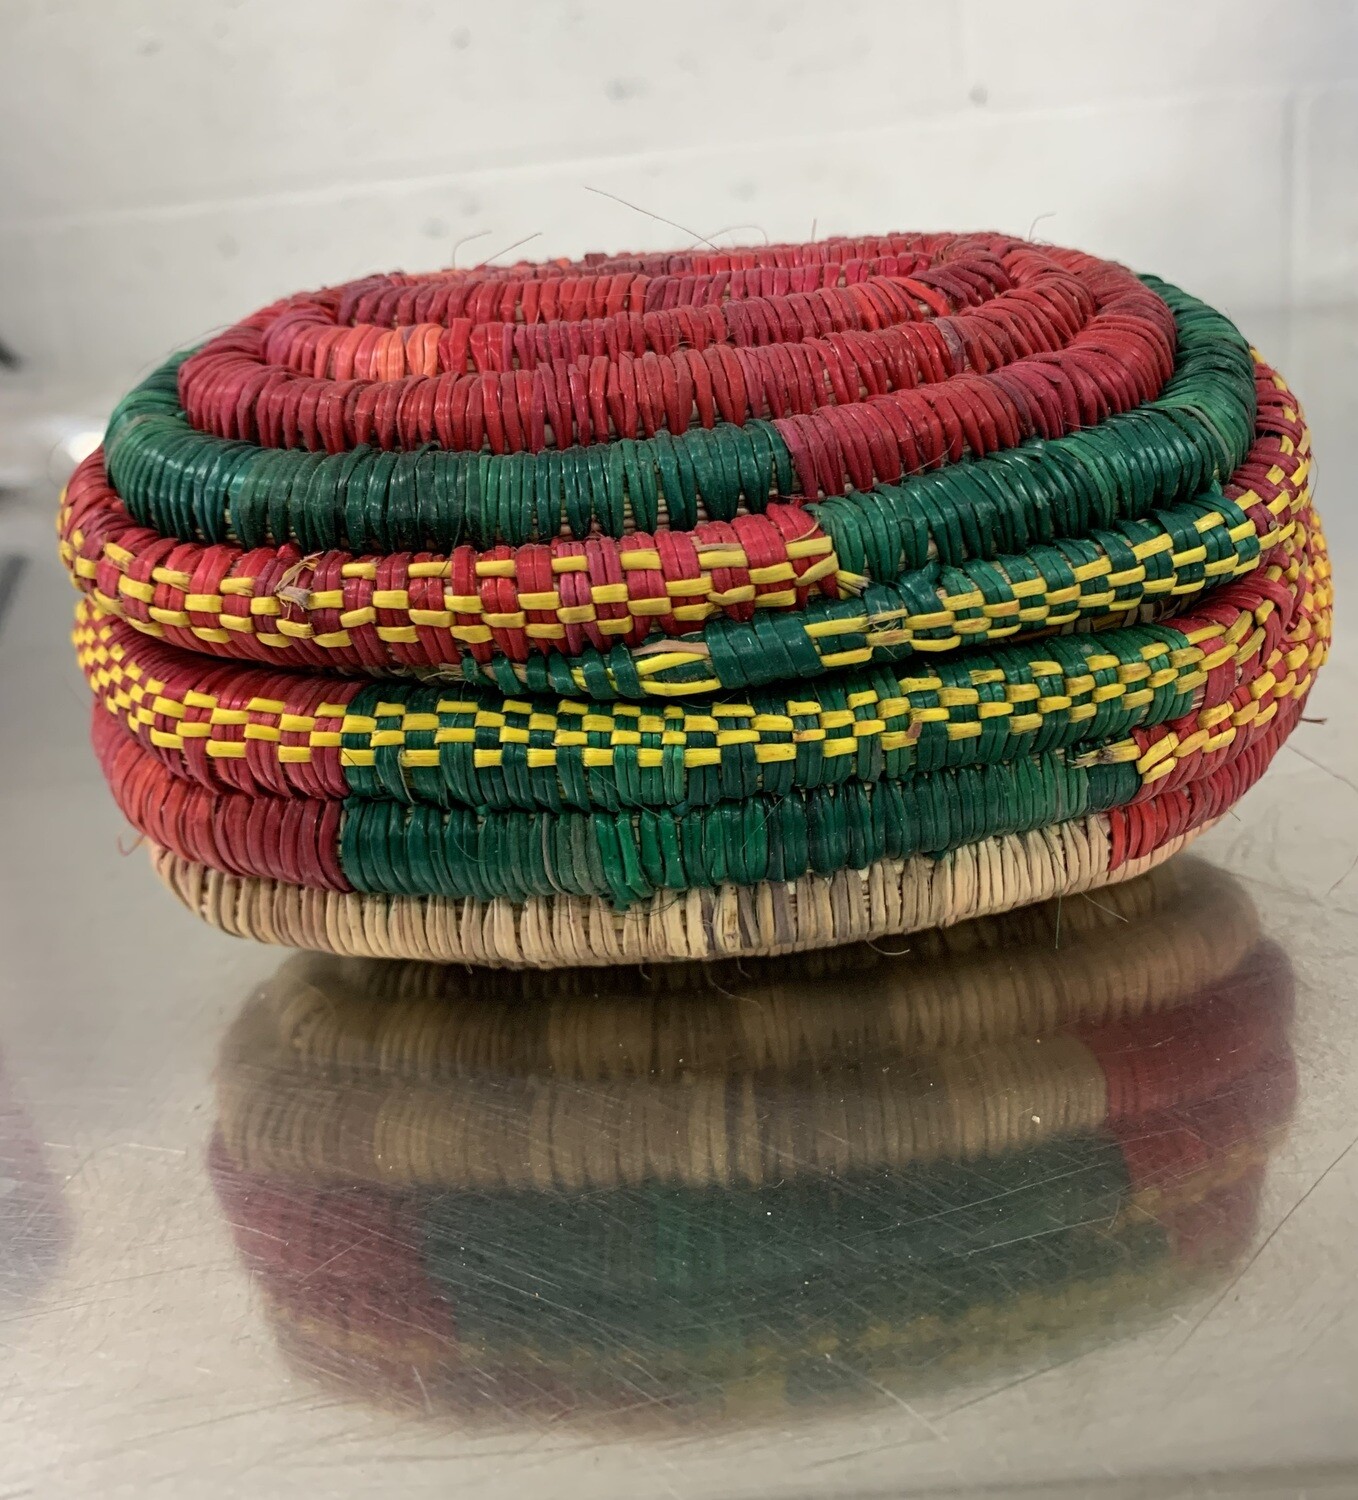 ሙዳይ Muday Ethiopian hand made small container